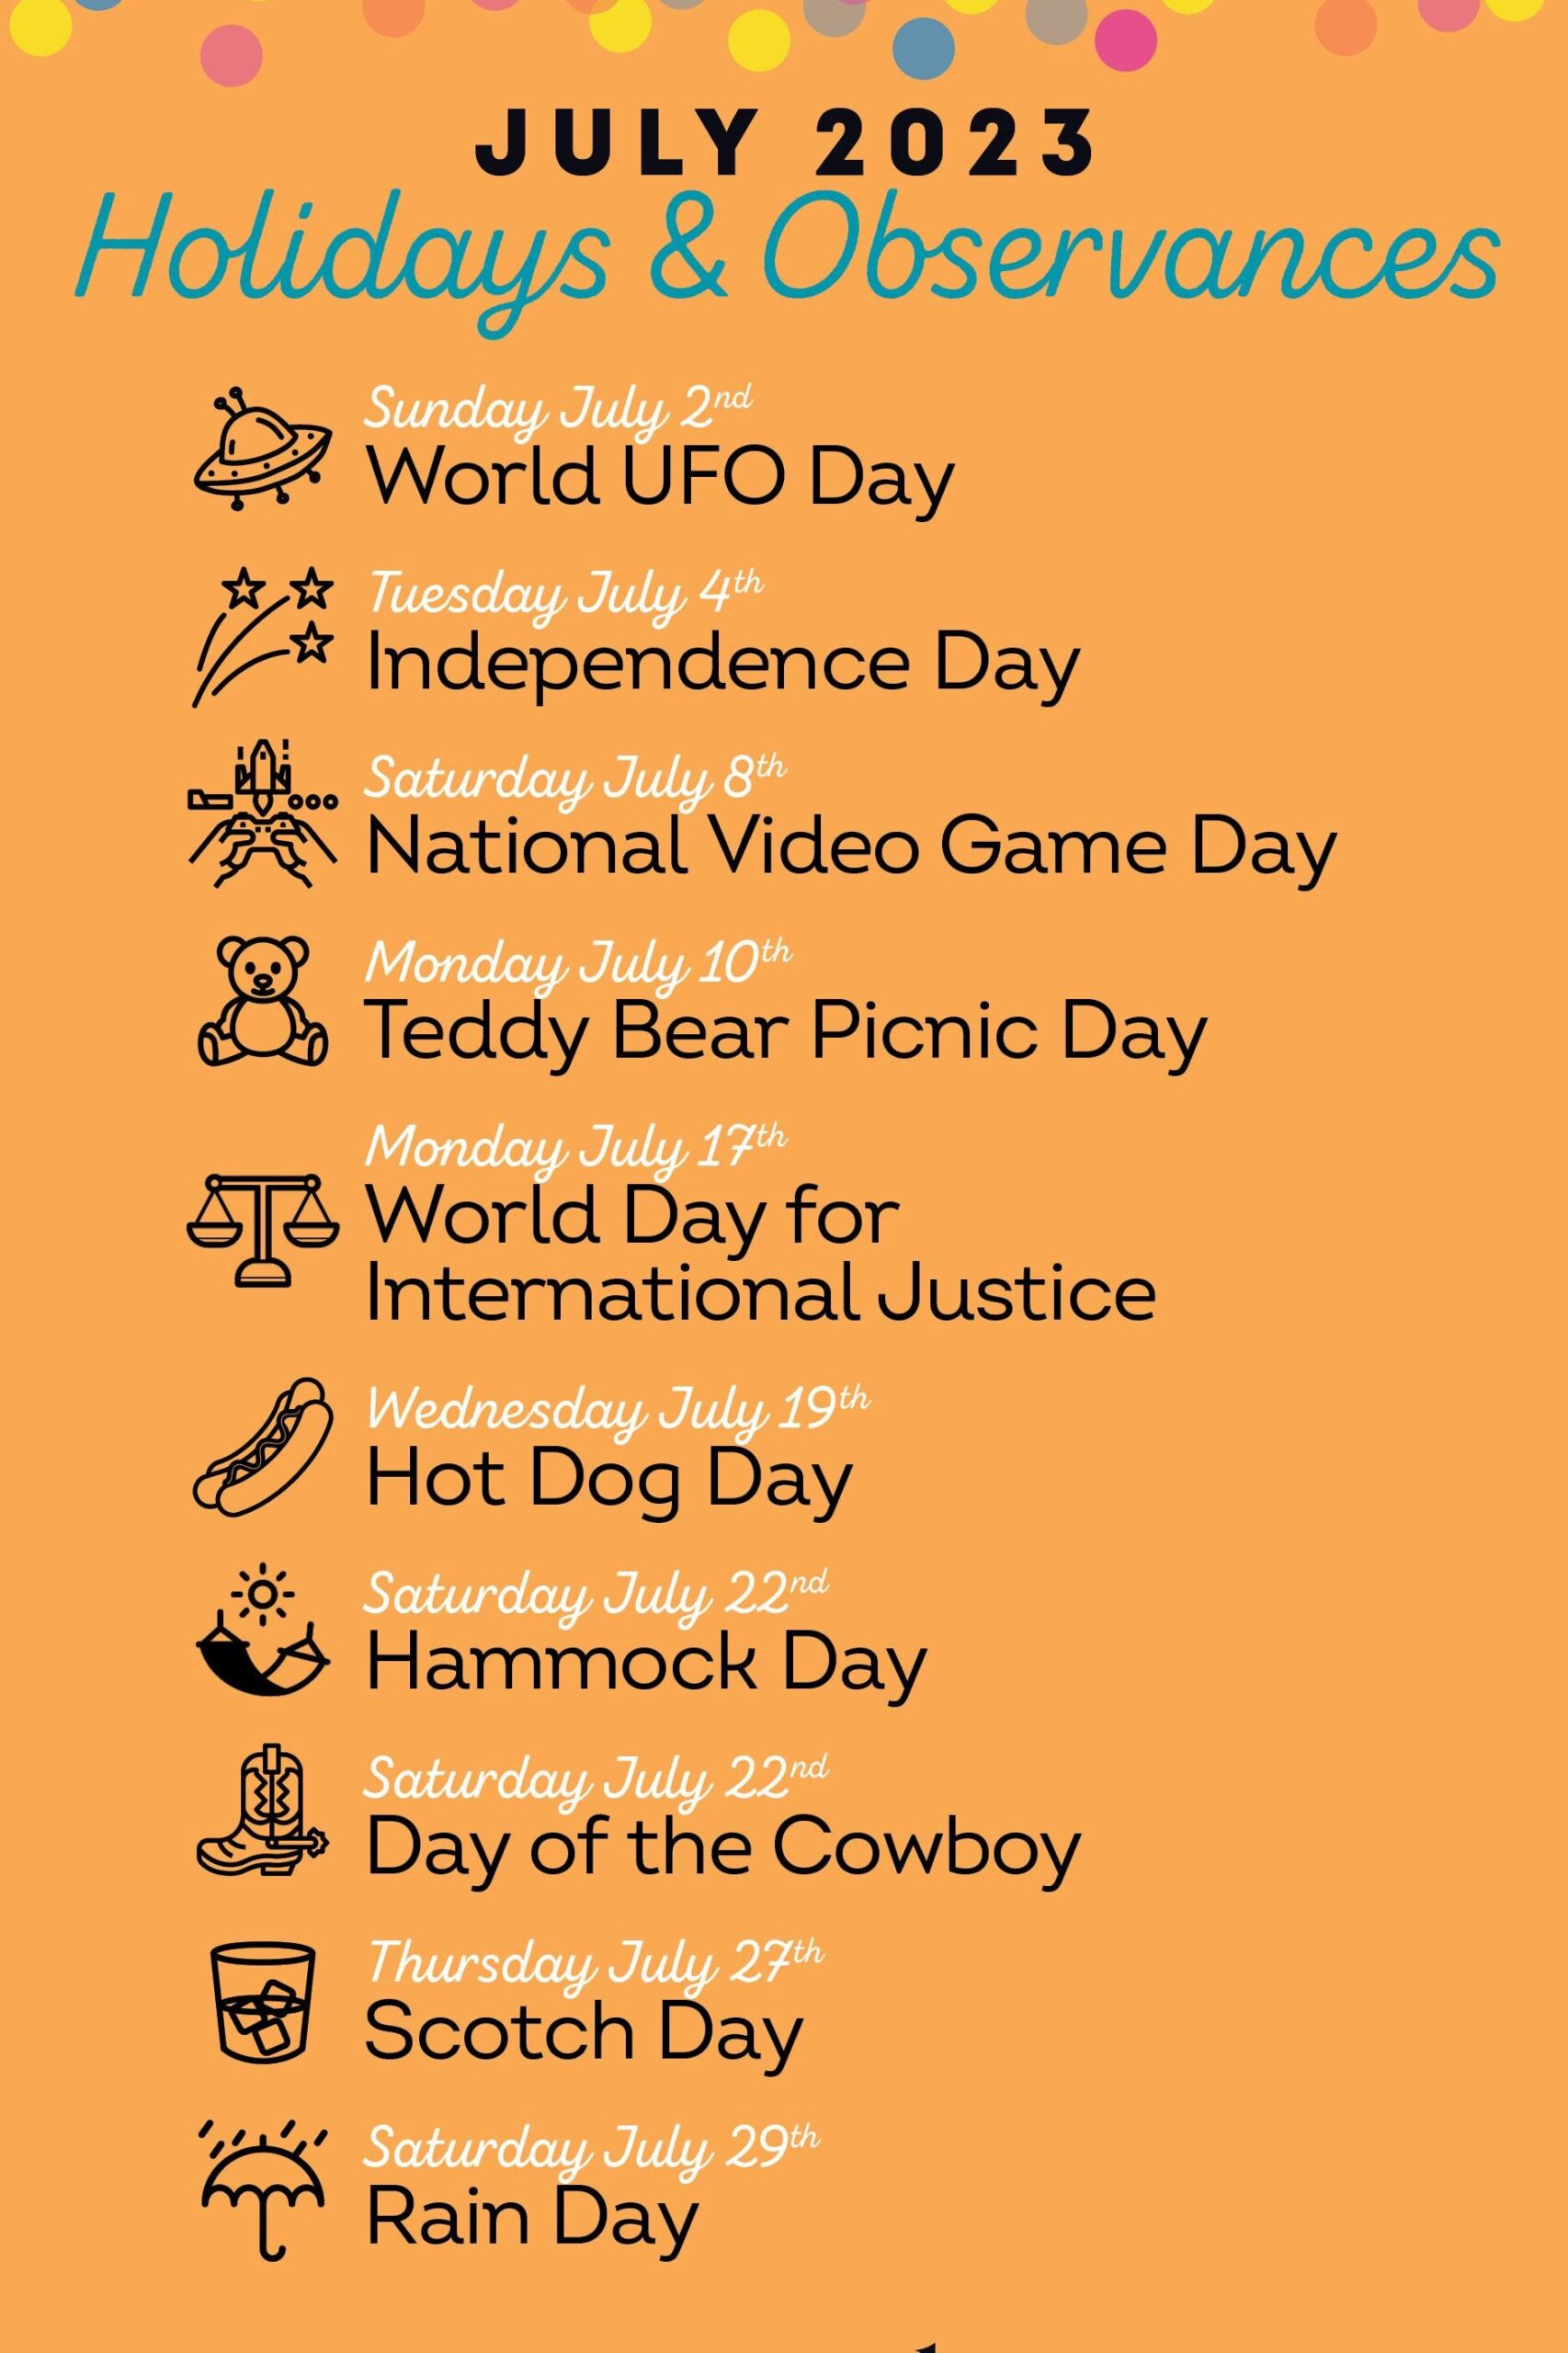 Lista completa de celebraciones y días festivos de julio de 2023